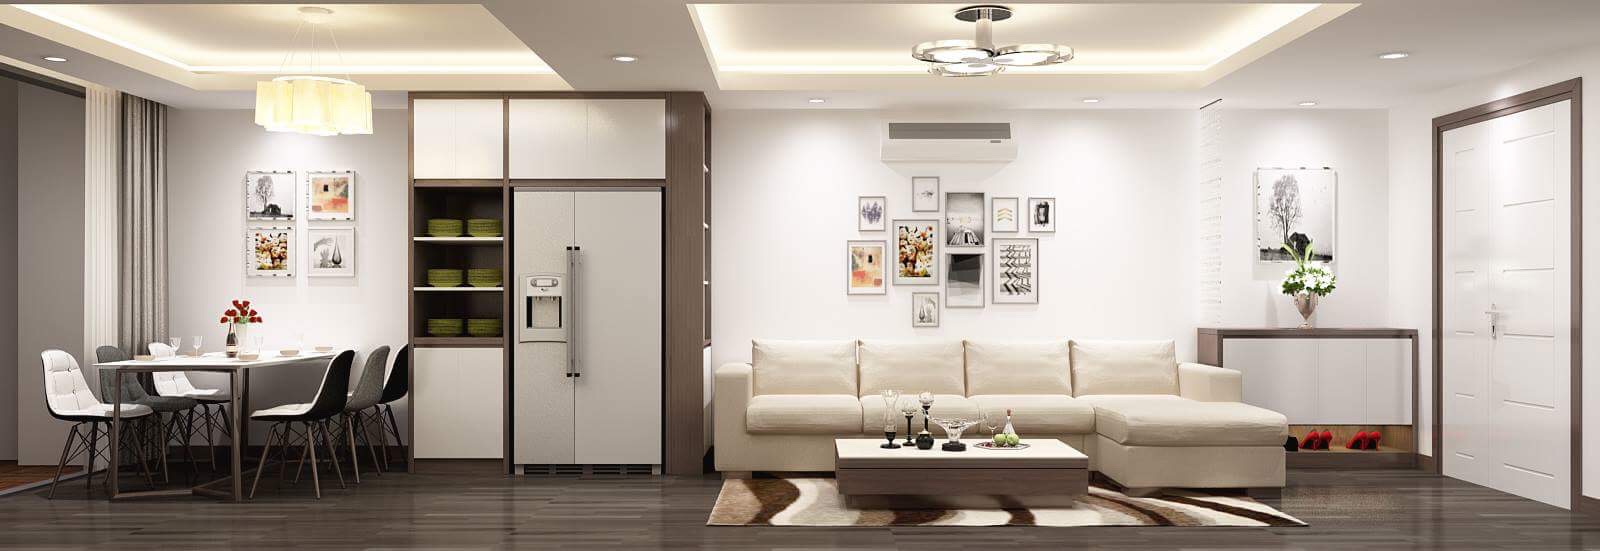 Phòng khách sang trọng, không gian rộng rãi với gam màu trắng chủ đạo mang đến một không gian sinh hoạt chung ấm cúng, nơi quây quần của cả gia đình.